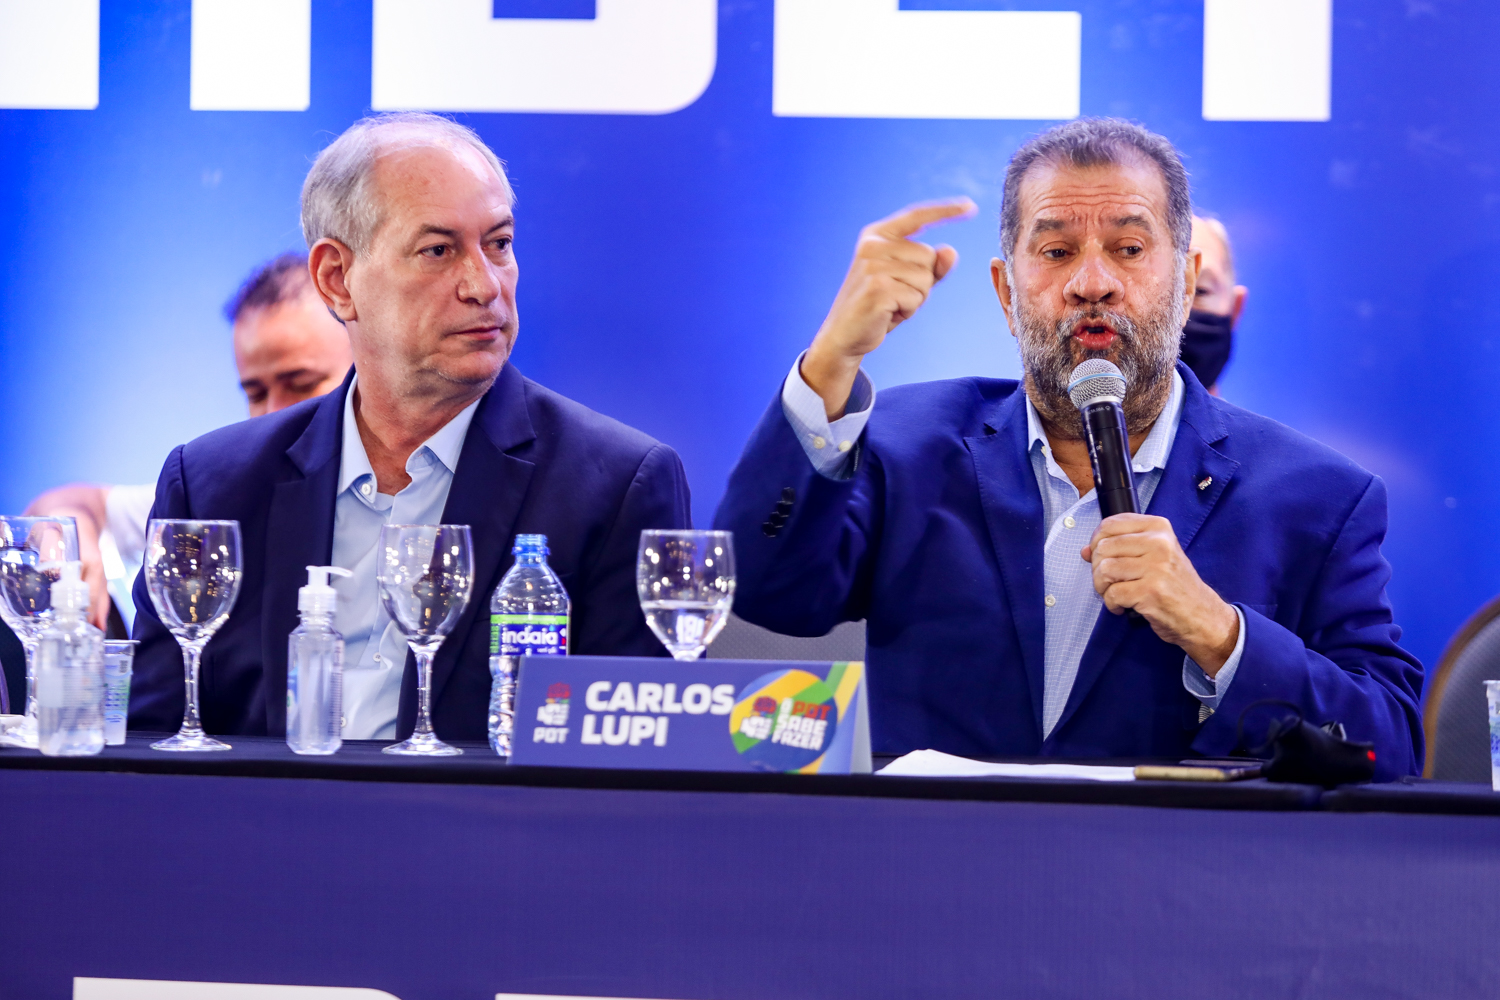 Carlos Lupi diz que Ciro Gomes é ‘incapaz de resolver questões simples’